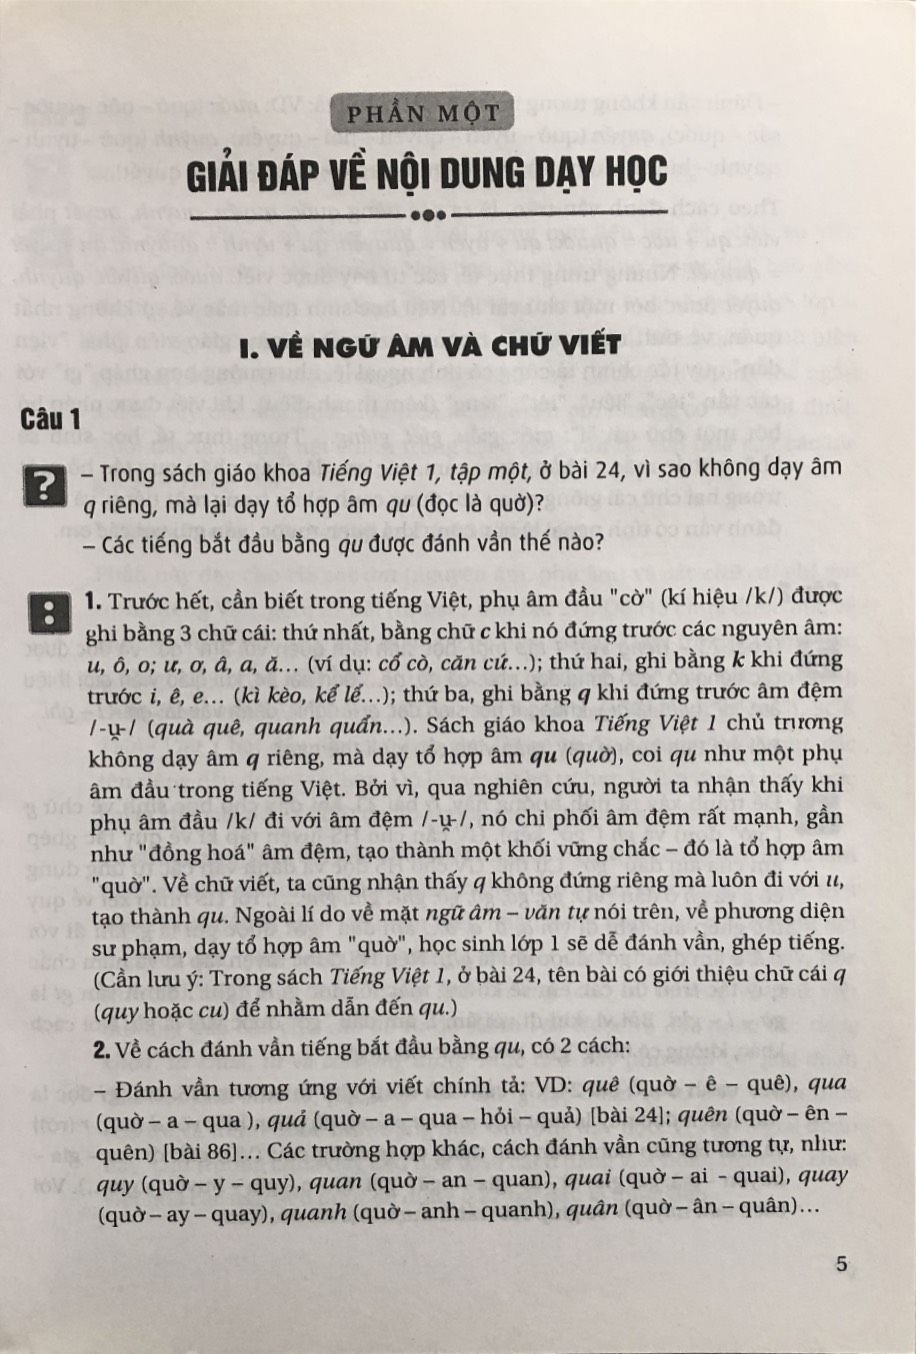 Giải đáp 120 câu hỏi thường gặp trong dạy học môn Tiếng Việt ở tiểu học